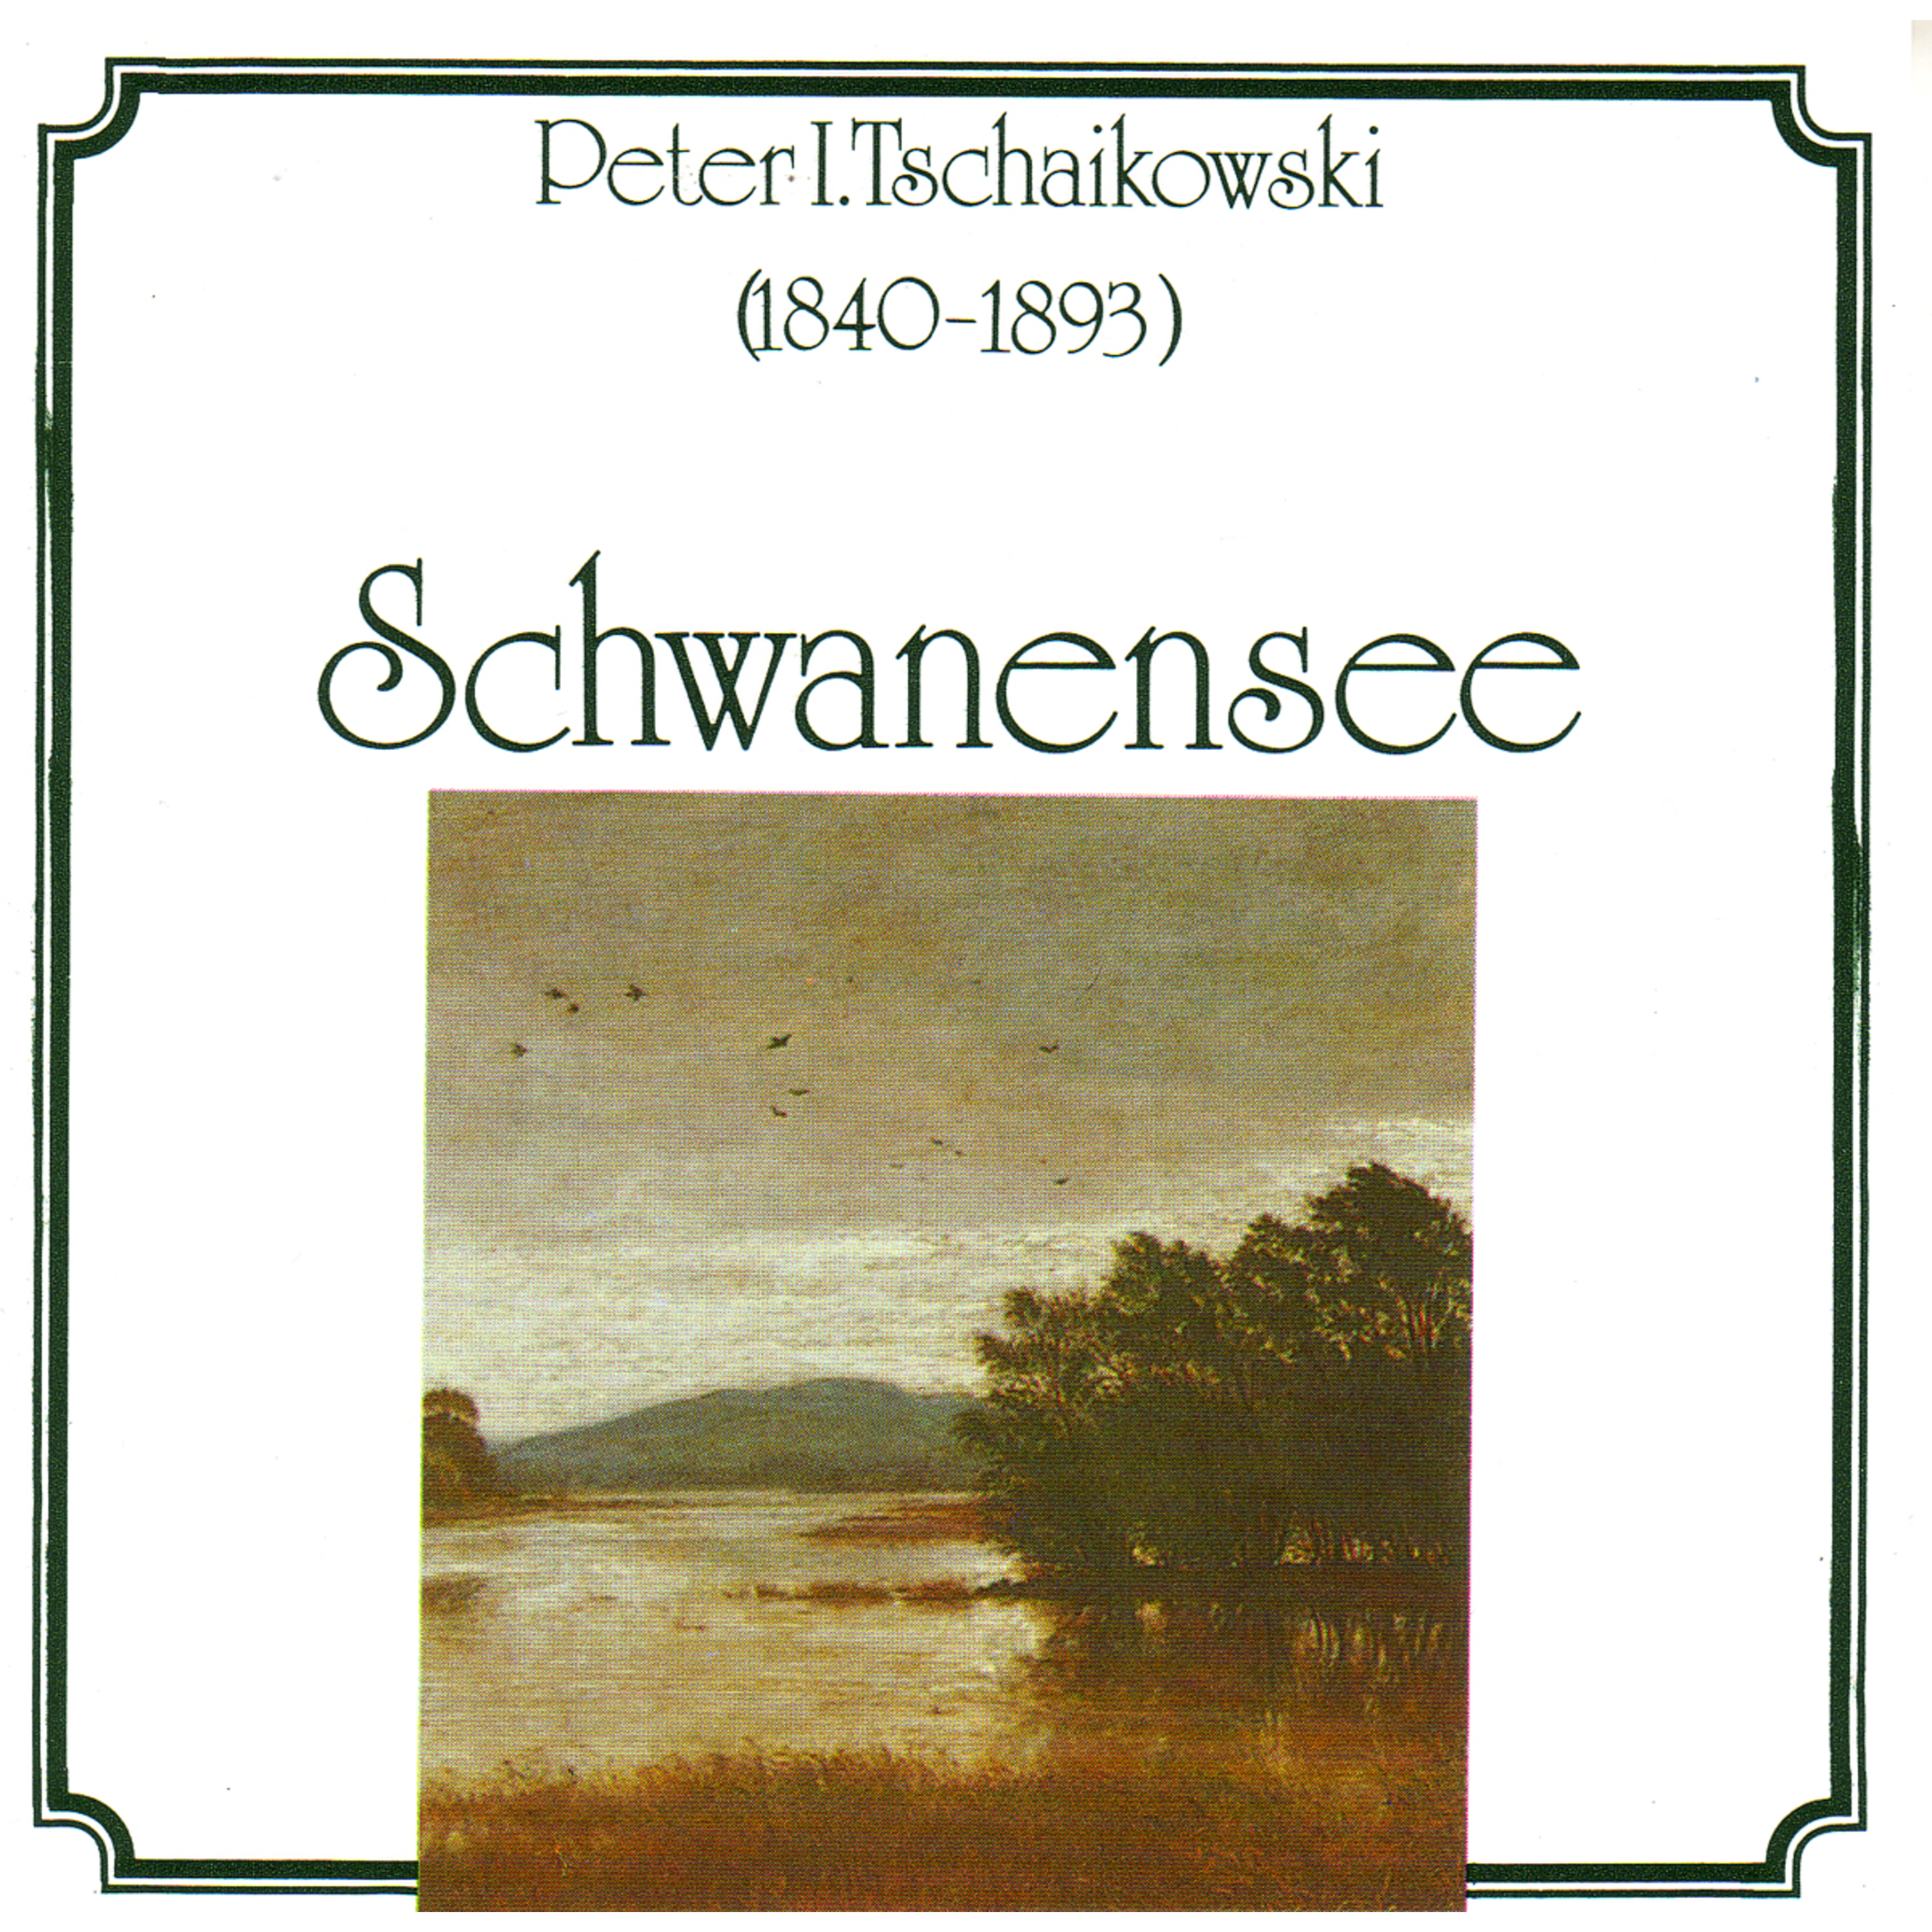 Peter Tschaikowsky - Schwanensee